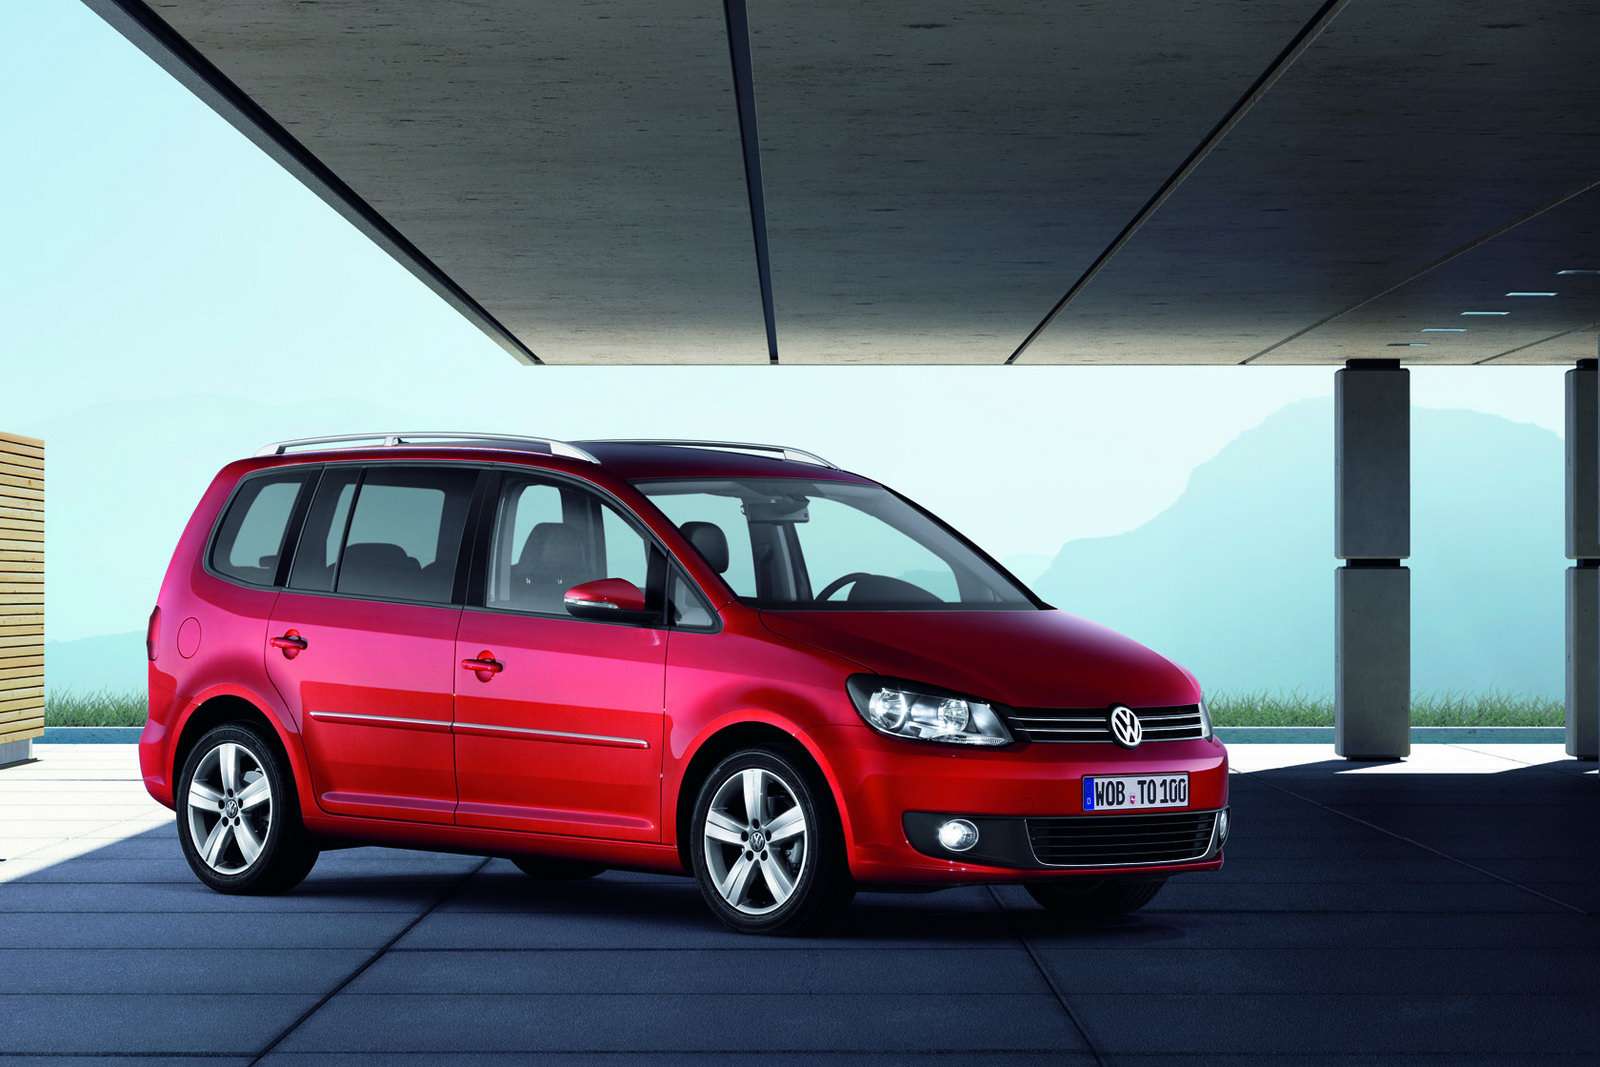 Volkswagen Touran po facelifcie kwiecien 2010